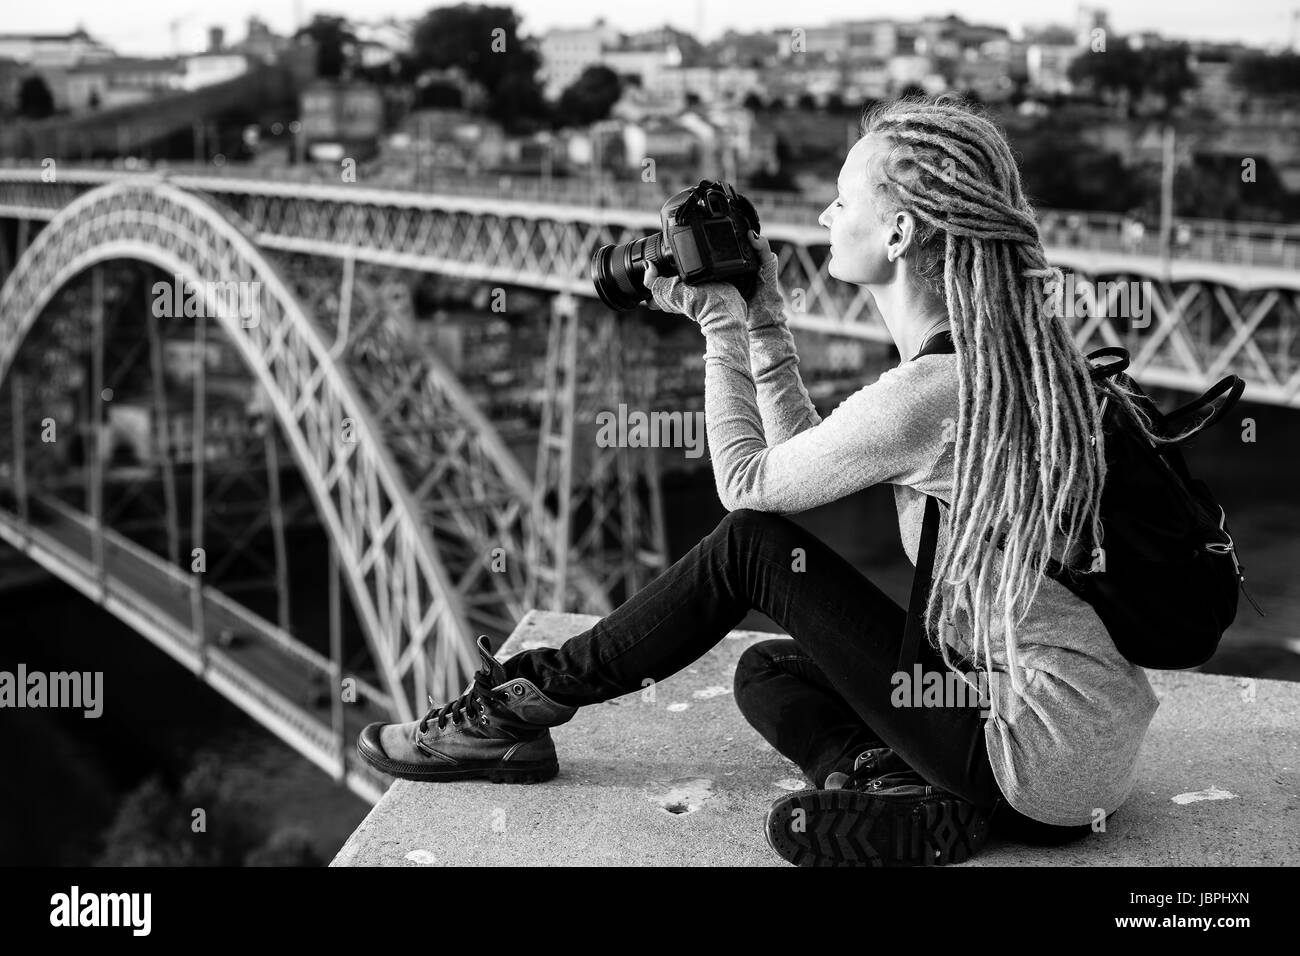 Junge schöne Frau mit Dreadlocks und eine Kamera sitzt Fotografieren von einem Dom Luis ich in alten Porto, Portugal zu überbrücken. Tourismus und Reisen, schwarz und Stockfoto